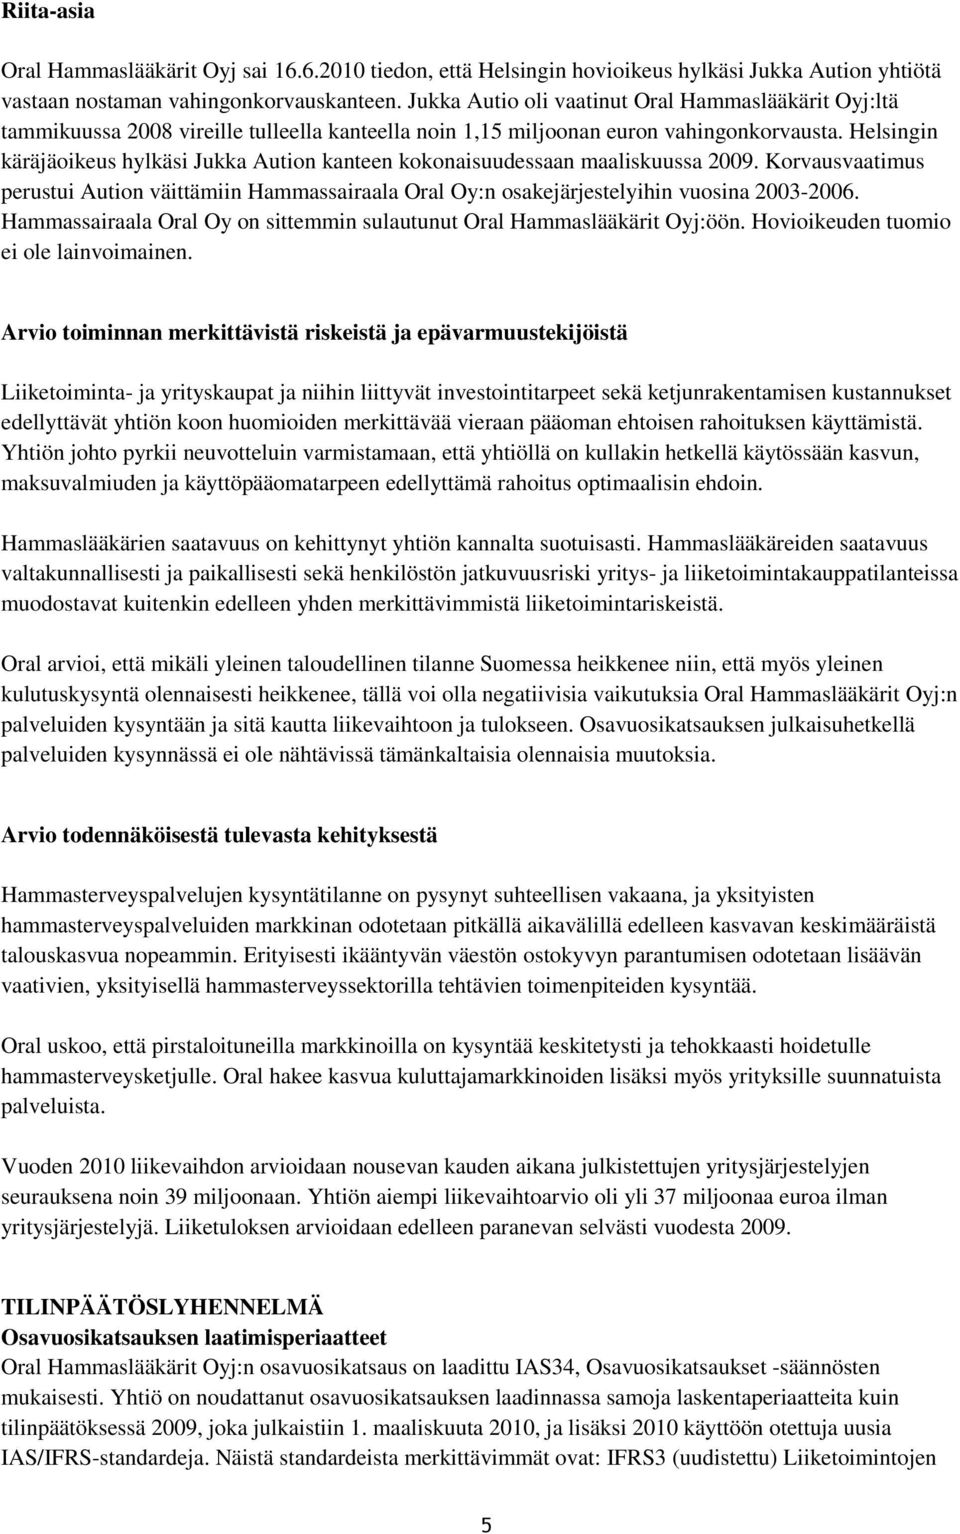 Helsingin käräjäoikeus hylkäsi Jukka Aution kanteen kokonaisuudessaan maaliskuussa. Korvausvaatimus perustui Aution väittämiin Hammassairaala Oral Oy:n osakejärjestelyihin vuosina 2003-2006.